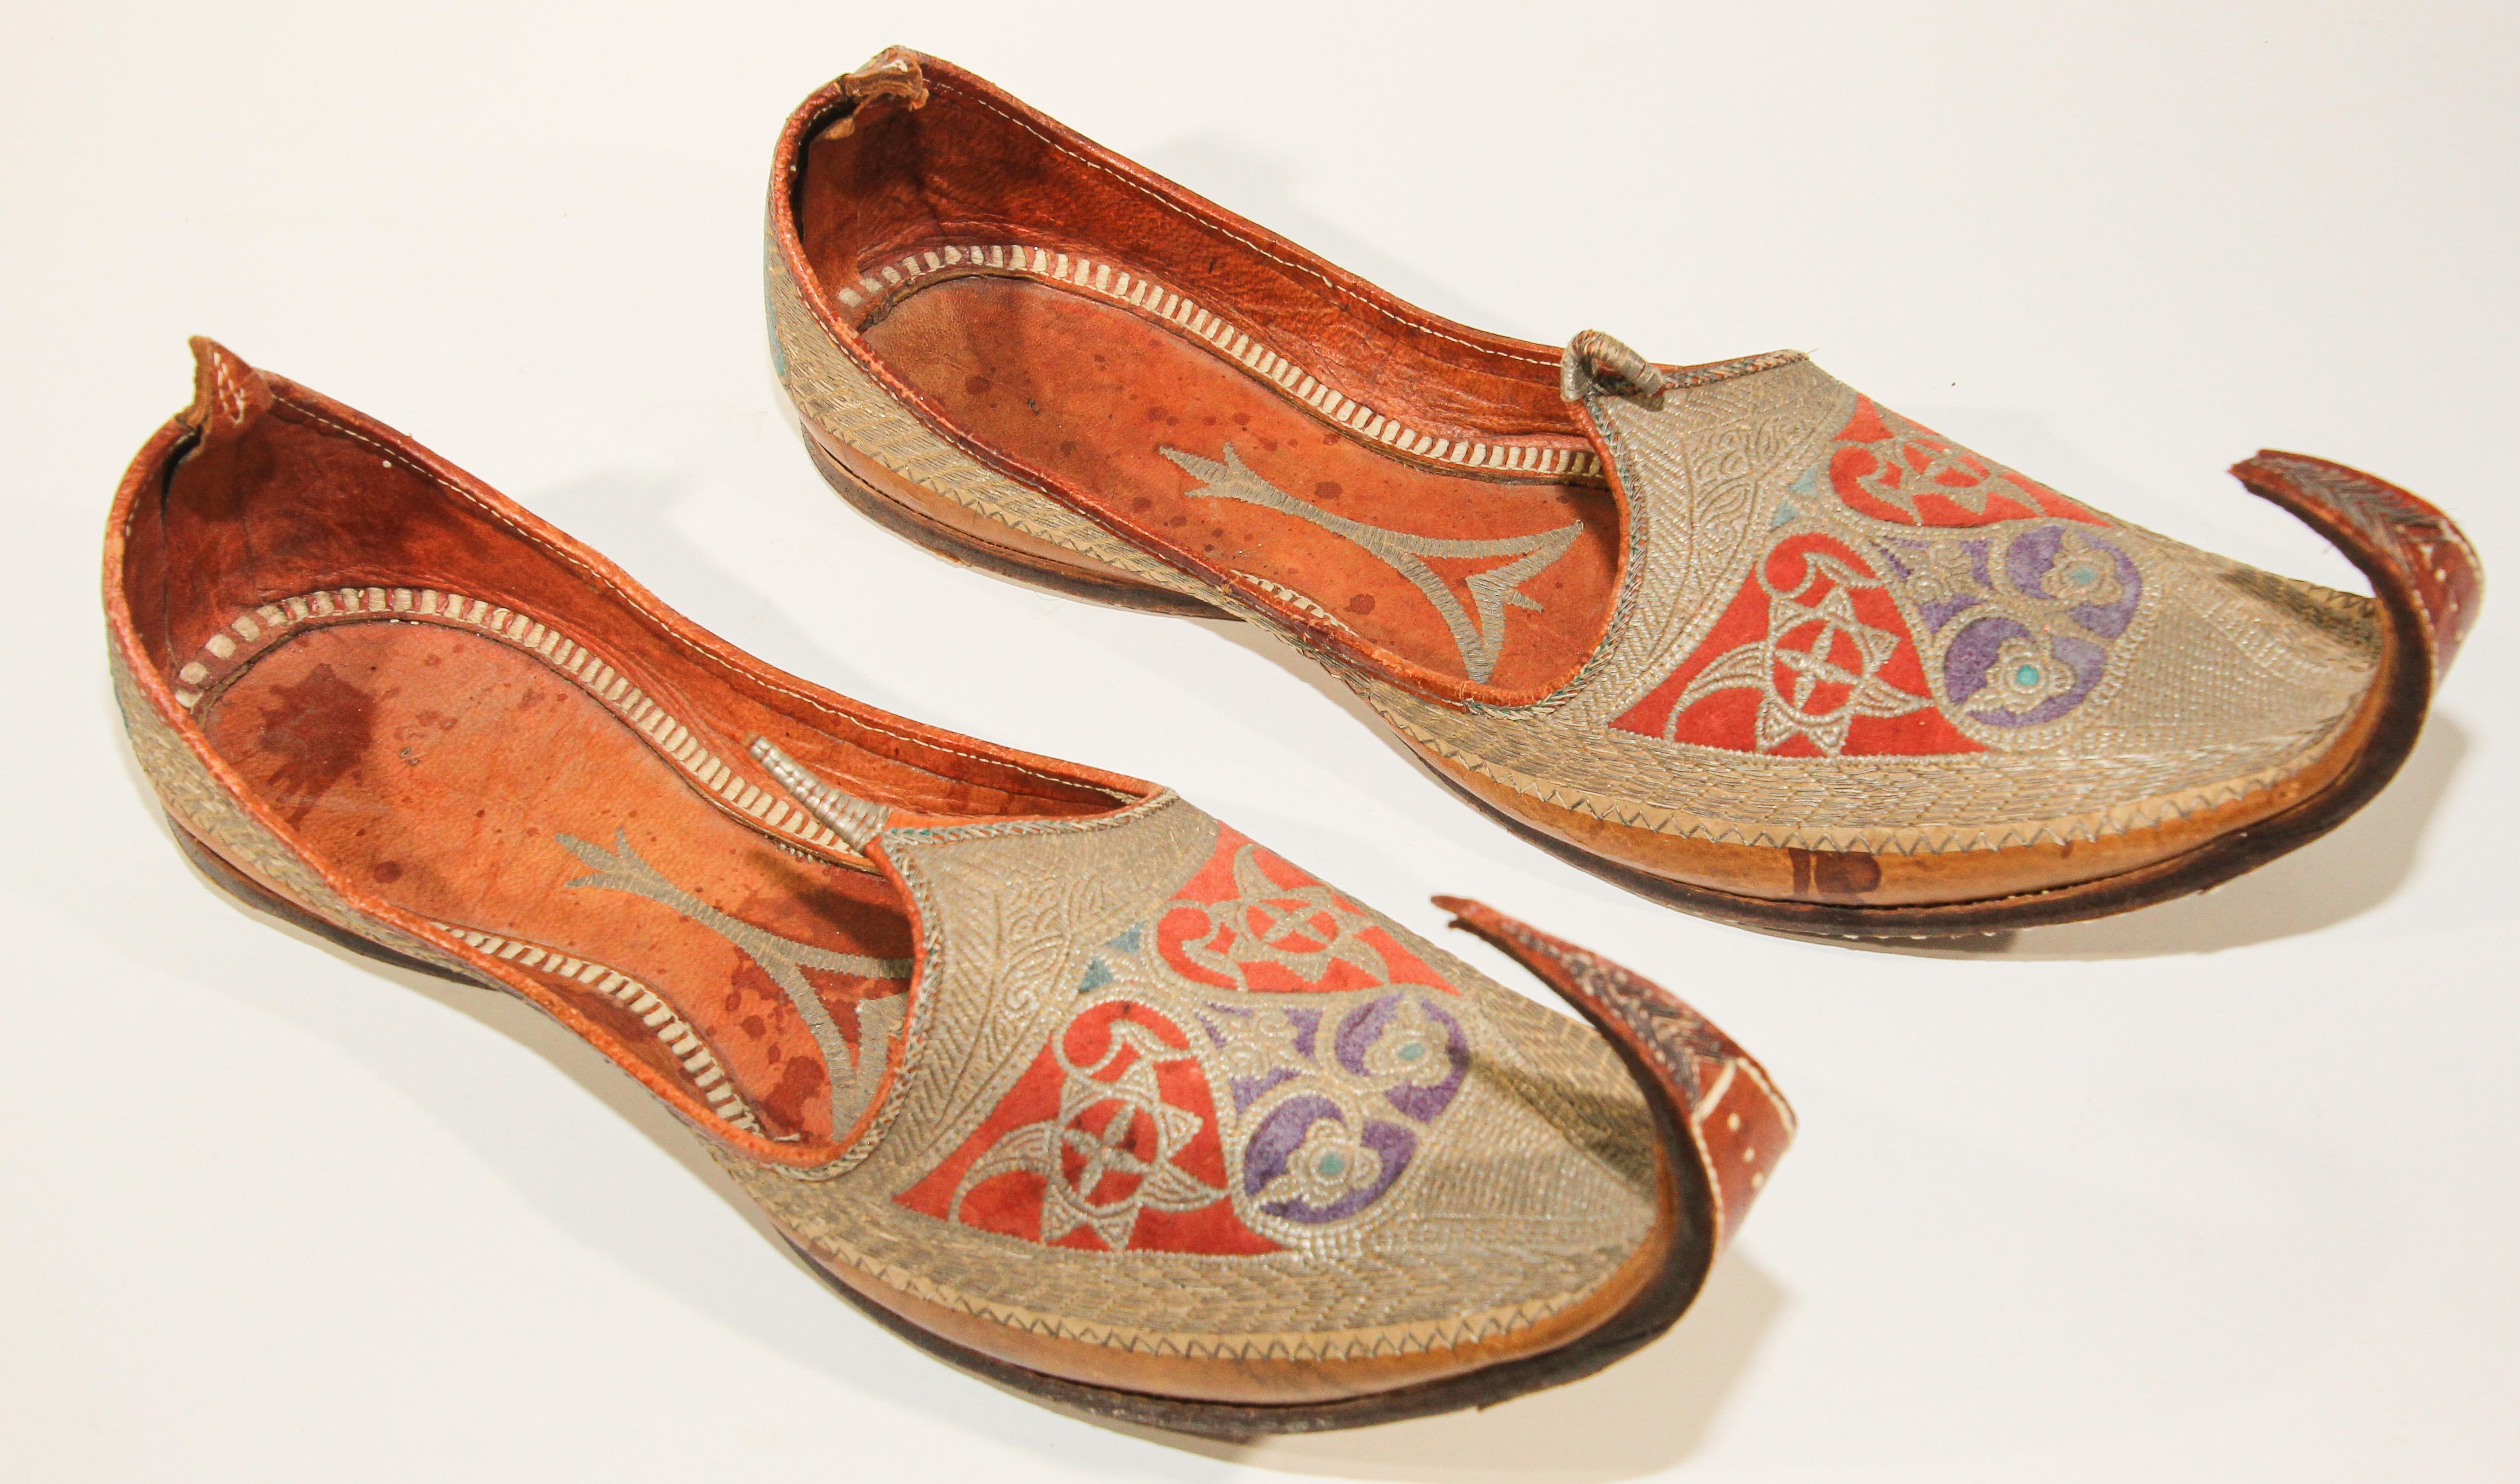 Paire de rares chaussures en cuir de la fin du XIXe siècle, cousues et façonnées à la main et brodées à la main avec des fils métalliques dorés.
Amazing antique Mughal or brodé traditionnel islamique indien chaussures en cuir digne d'un Maharaja.